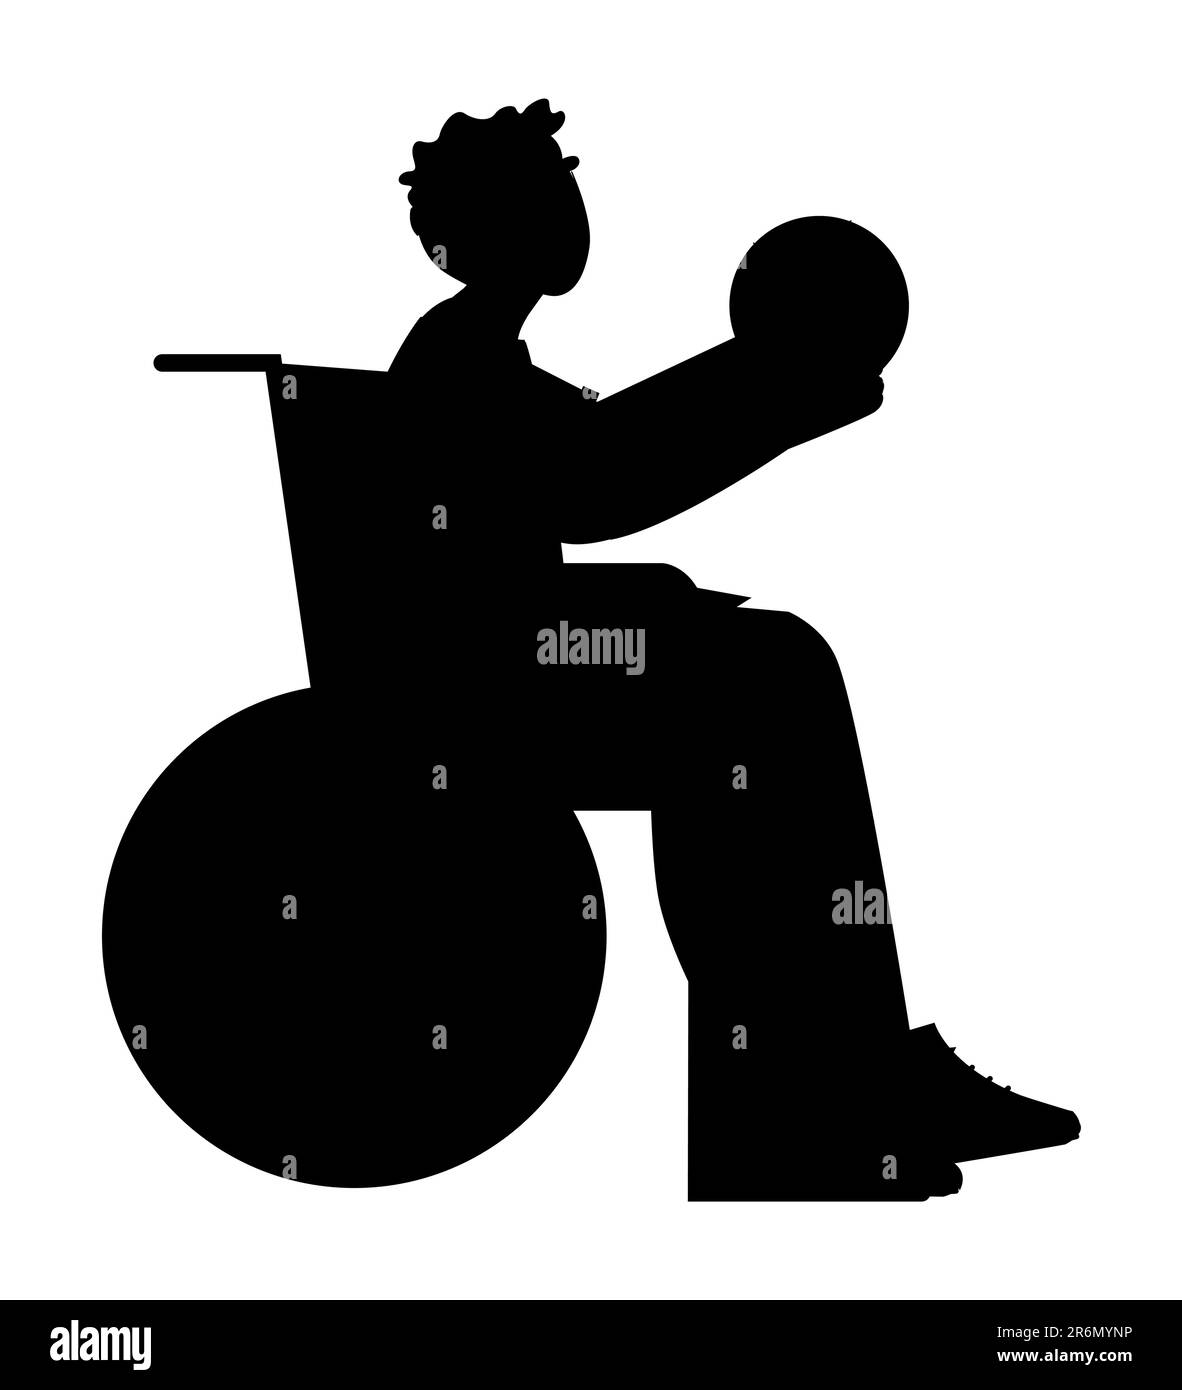 Silhouette noire d'un jeune homme handicapé assis dans un fauteuil roulant et jouant au basket-ball, suivant son rêve, vecteur isolé sur fond blanc Illustration de Vecteur